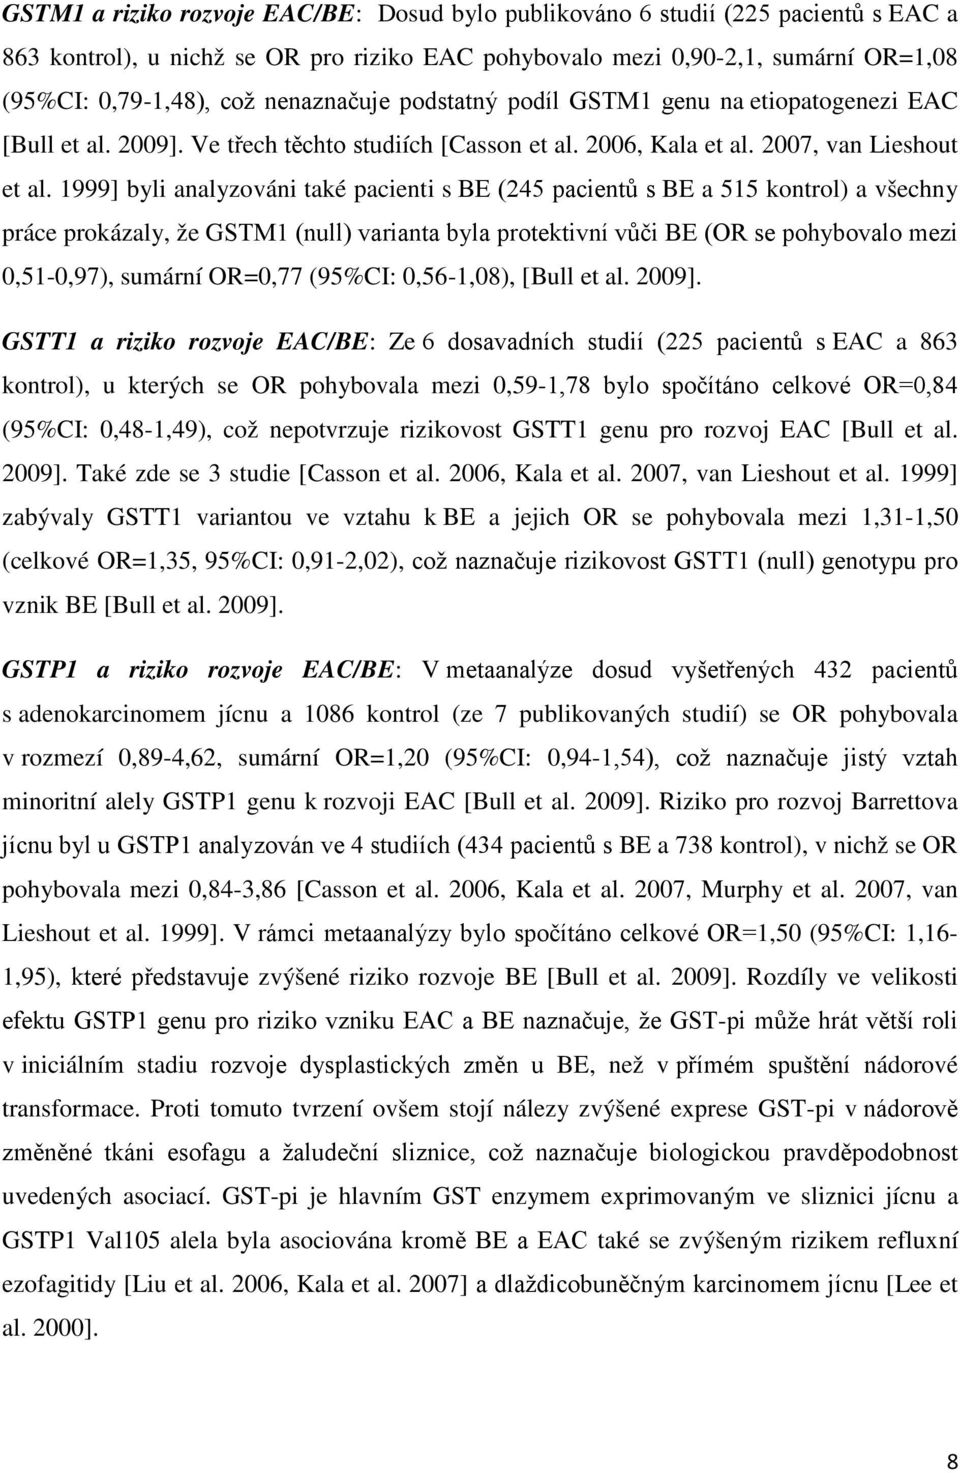 1999] byli analyzováni také pacienti s BE (245 pacientů s BE a 515 kontrol) a všechny práce prokázaly, že GSTM1 (null) varianta byla protektivní vůči BE (OR se pohybovalo mezi 0,51-0,97), sumární